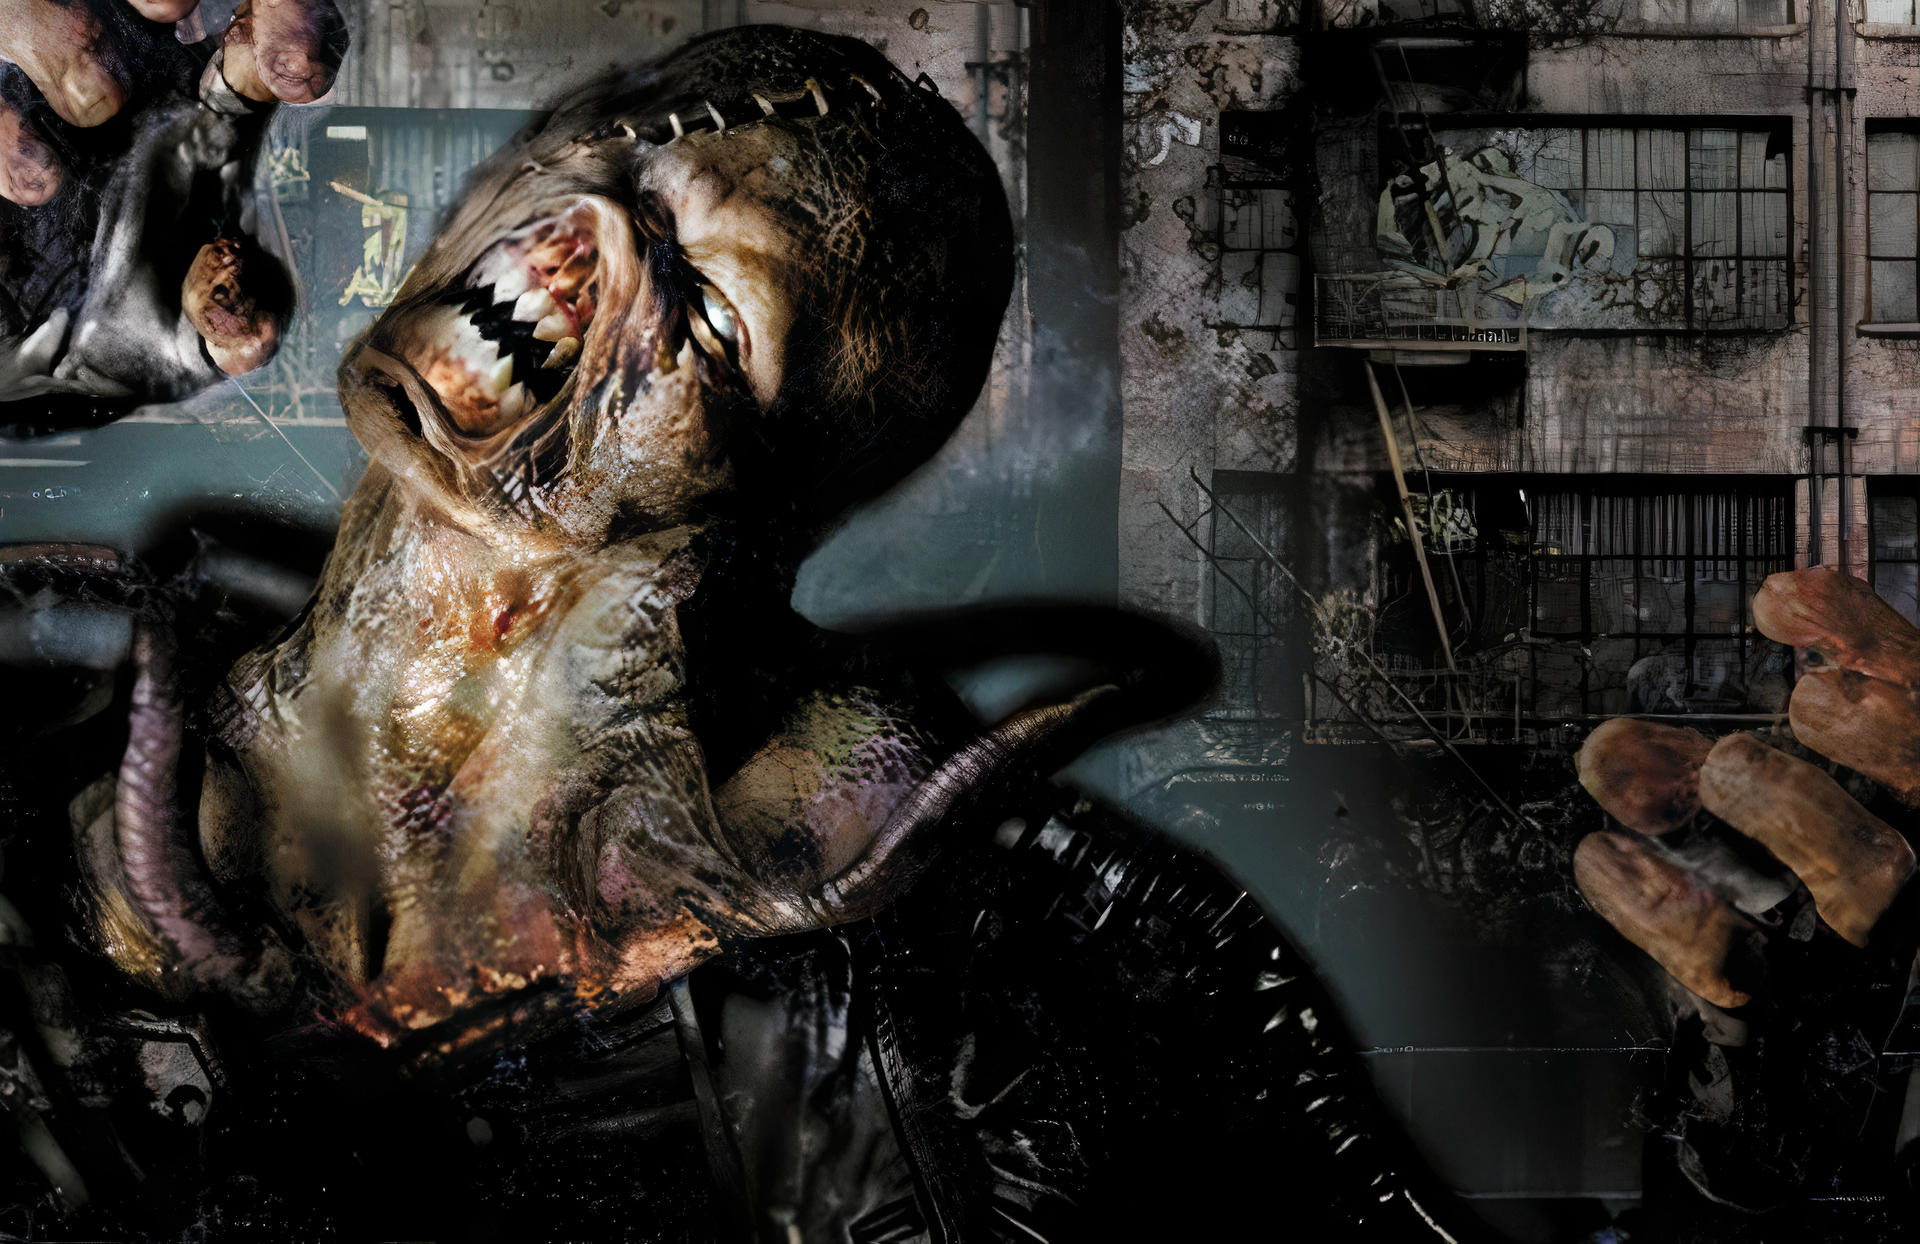 Resident Evil 3 Remake Wallpaper by kaelwolfgang on DeviantArt